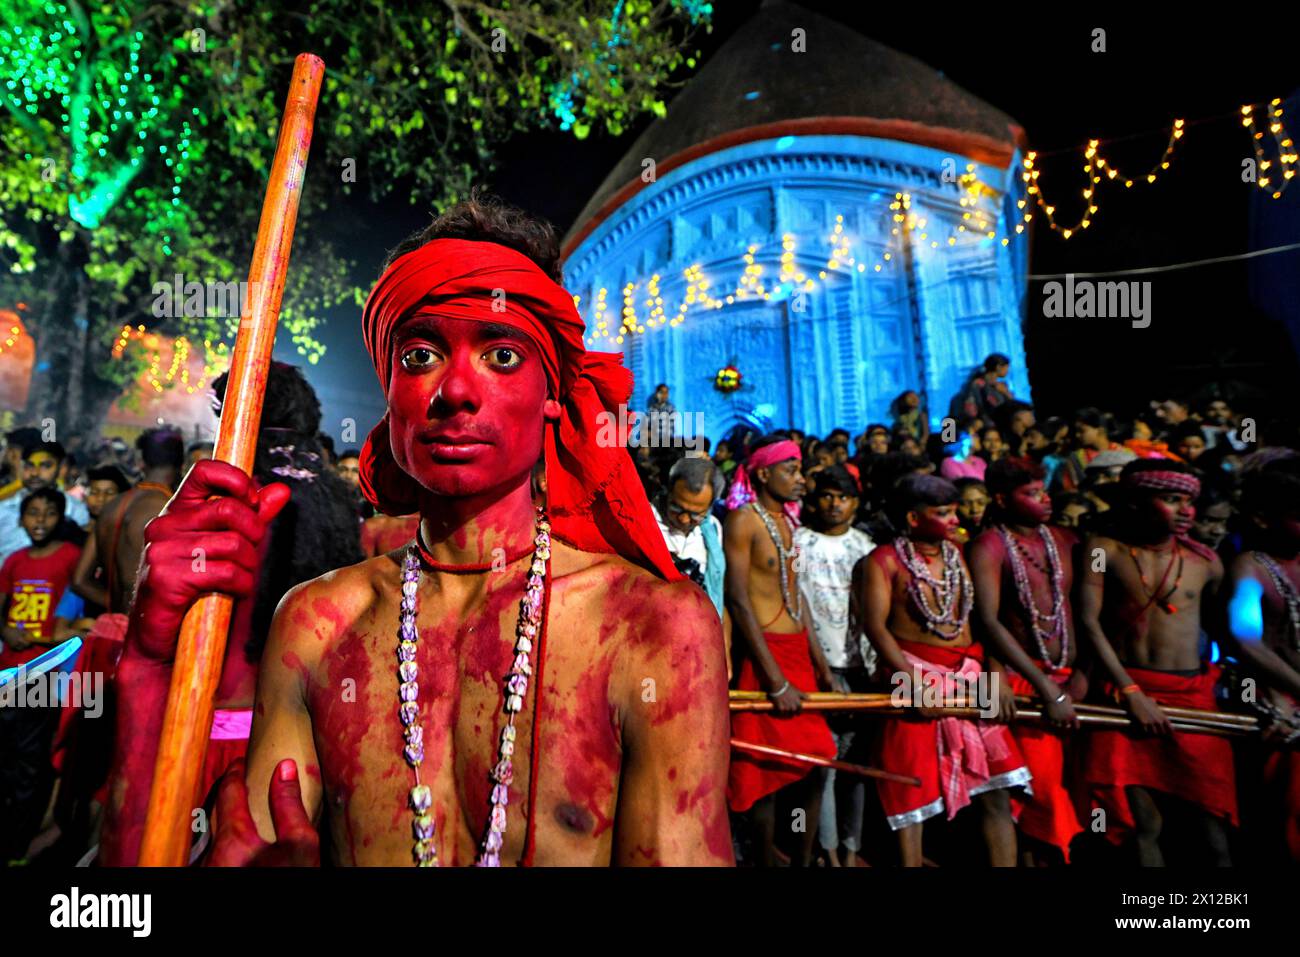 Un devoto hindú con su cara de color rojo posa para una foto durante el festival anual de Gajan. Gajan es un festival hindú celebrado principalmente en la parte rural de Bengala Occidental. El festival está relacionado con el Señor Shiva y según la mitología en el último día del Calendario Bengalí (mediados de abril) los devotos solían adorar a los cadáveres para satisfacer al Señor Shiva para una mejor lluvia y cosecha según las prácticas tradicionales de 100 años de antigüedad. El tema central de este festival es obtener satisfacción a través del dolor no sexual, la devoción y el sacrificio. Foto de stock